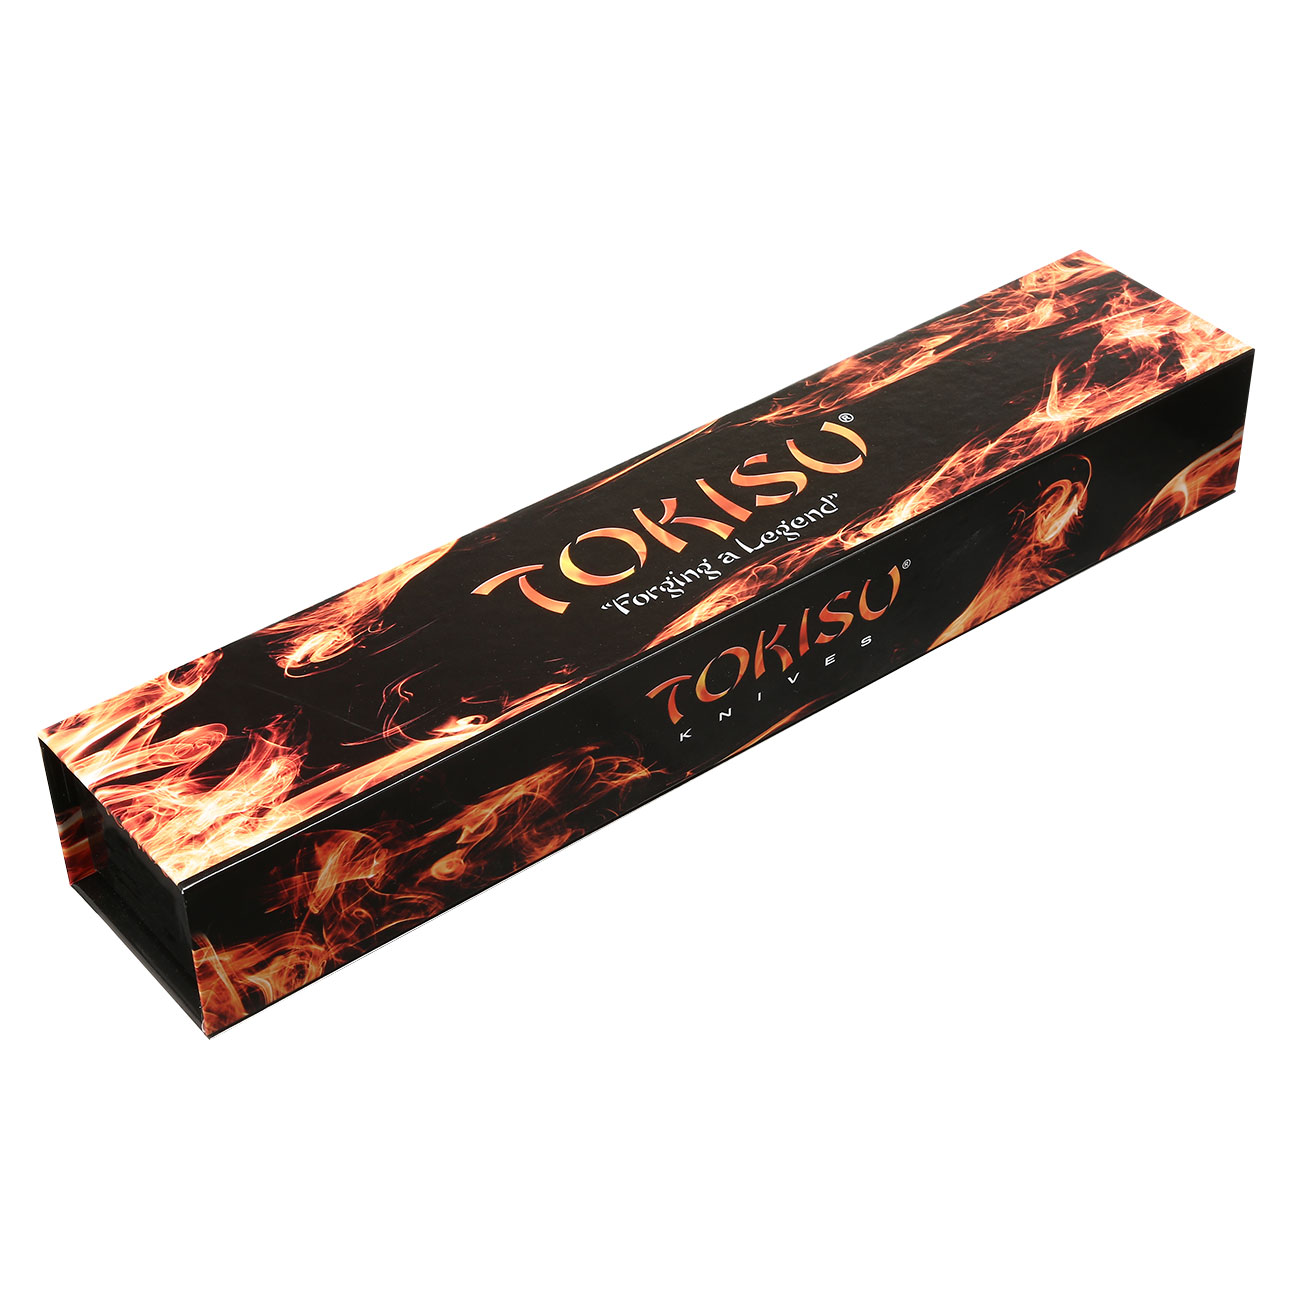 Tokisu Taktisches Messer Musashii Tantoklinge silber/schwarz inkl. Gürtelscheide und Box Bild 1